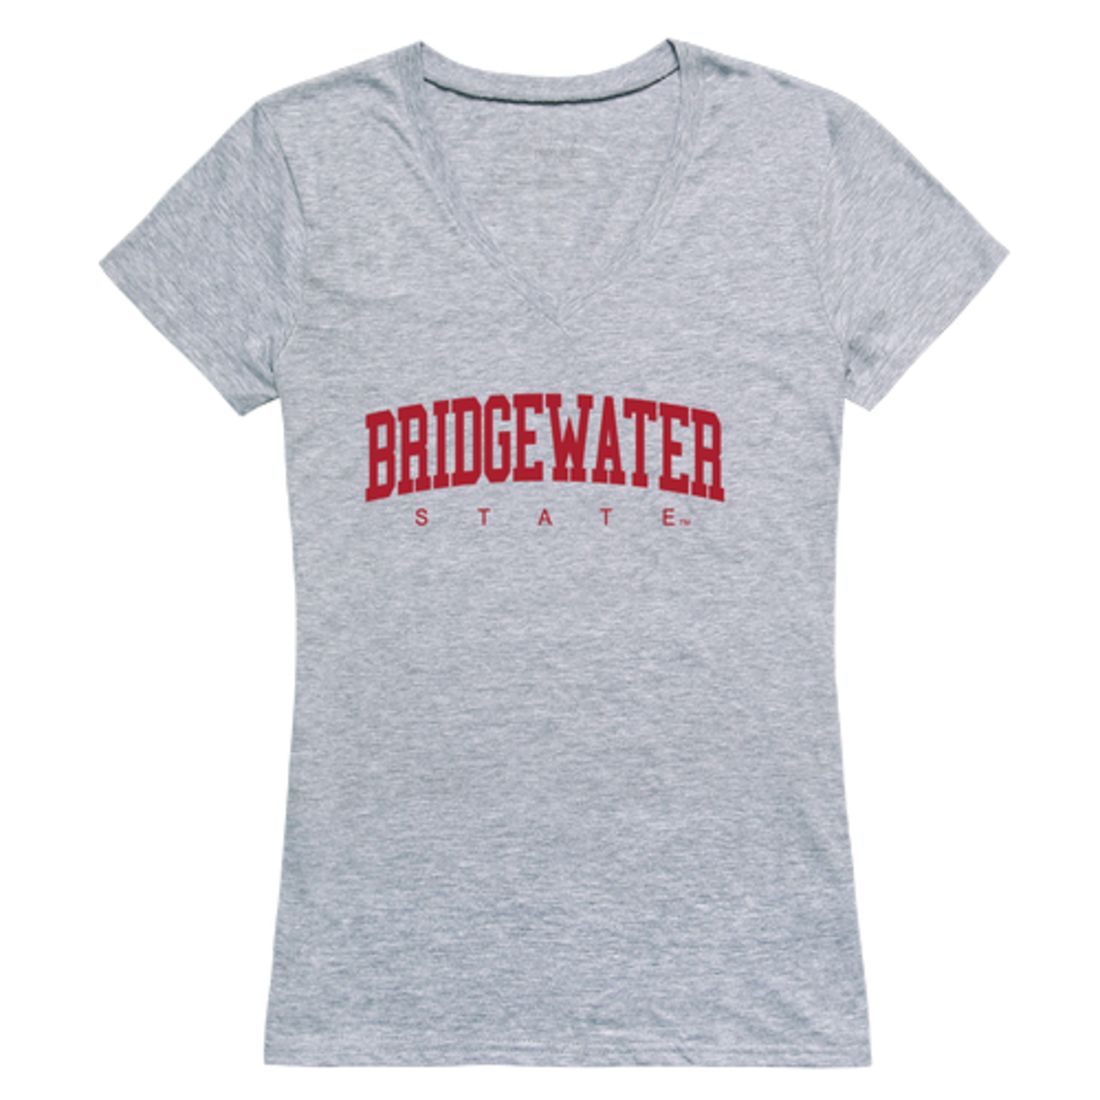 Bridgewater State University Bears Womens Game Day T-Shirt Tee